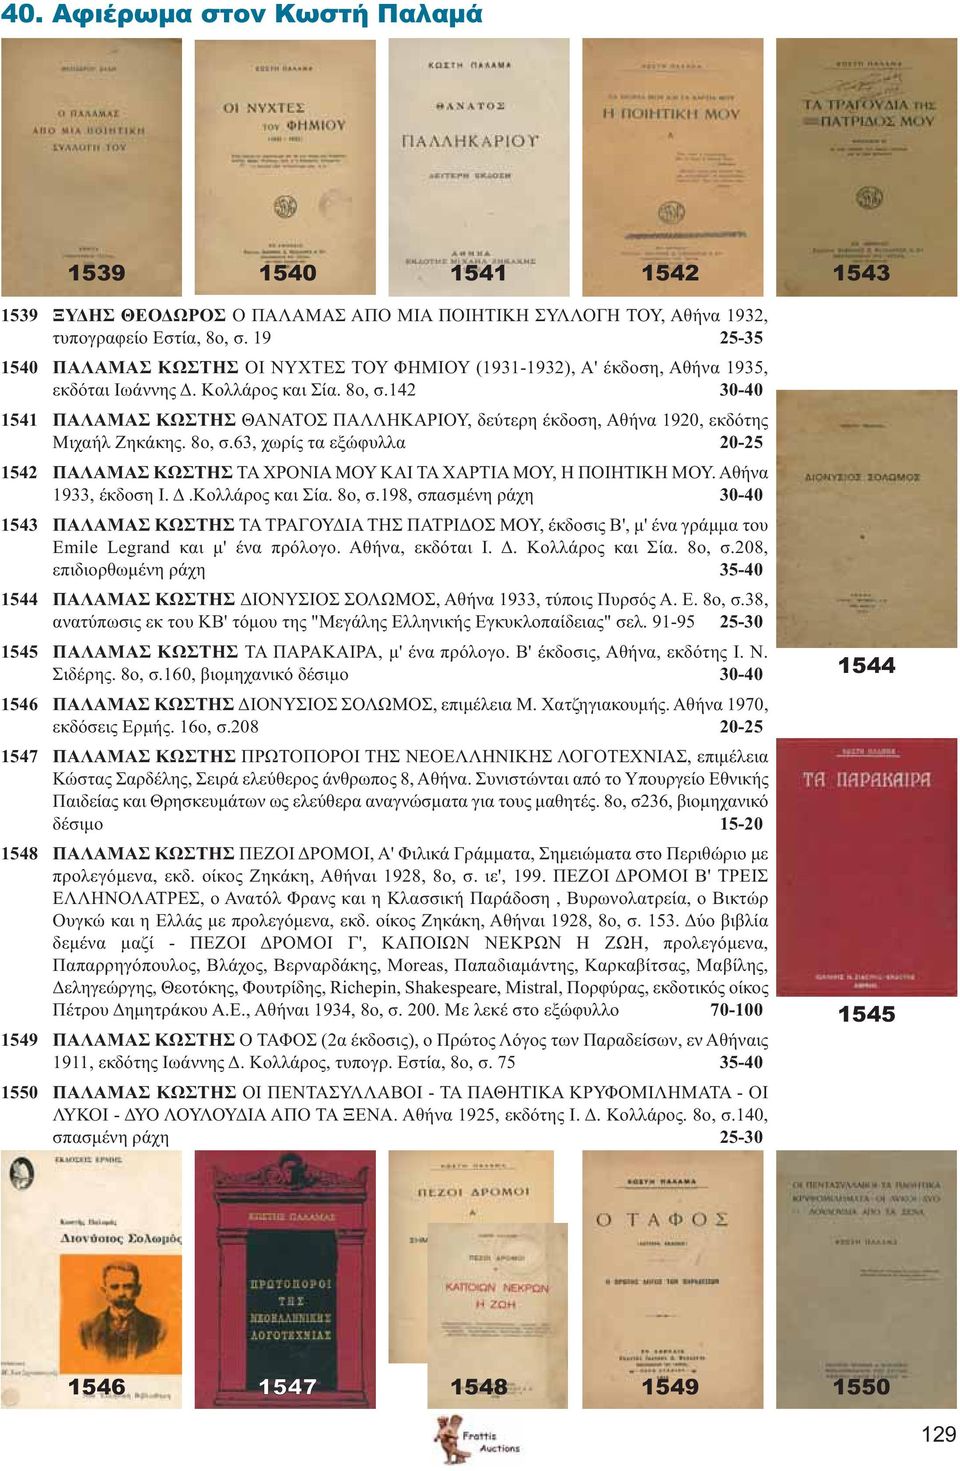 142 30-40 1541 ΠΑΛΑΜΑΣ ΚΩΣΤΗΣ ΘΑΝΑΤΟΣ ΠΑΛΛΗΚΑΡΙΟΥ, δεύτερη έκδοση, Αθήνα 1920, εκδότης Μιχαήλ Ζηκάκης. 8ο, σ.